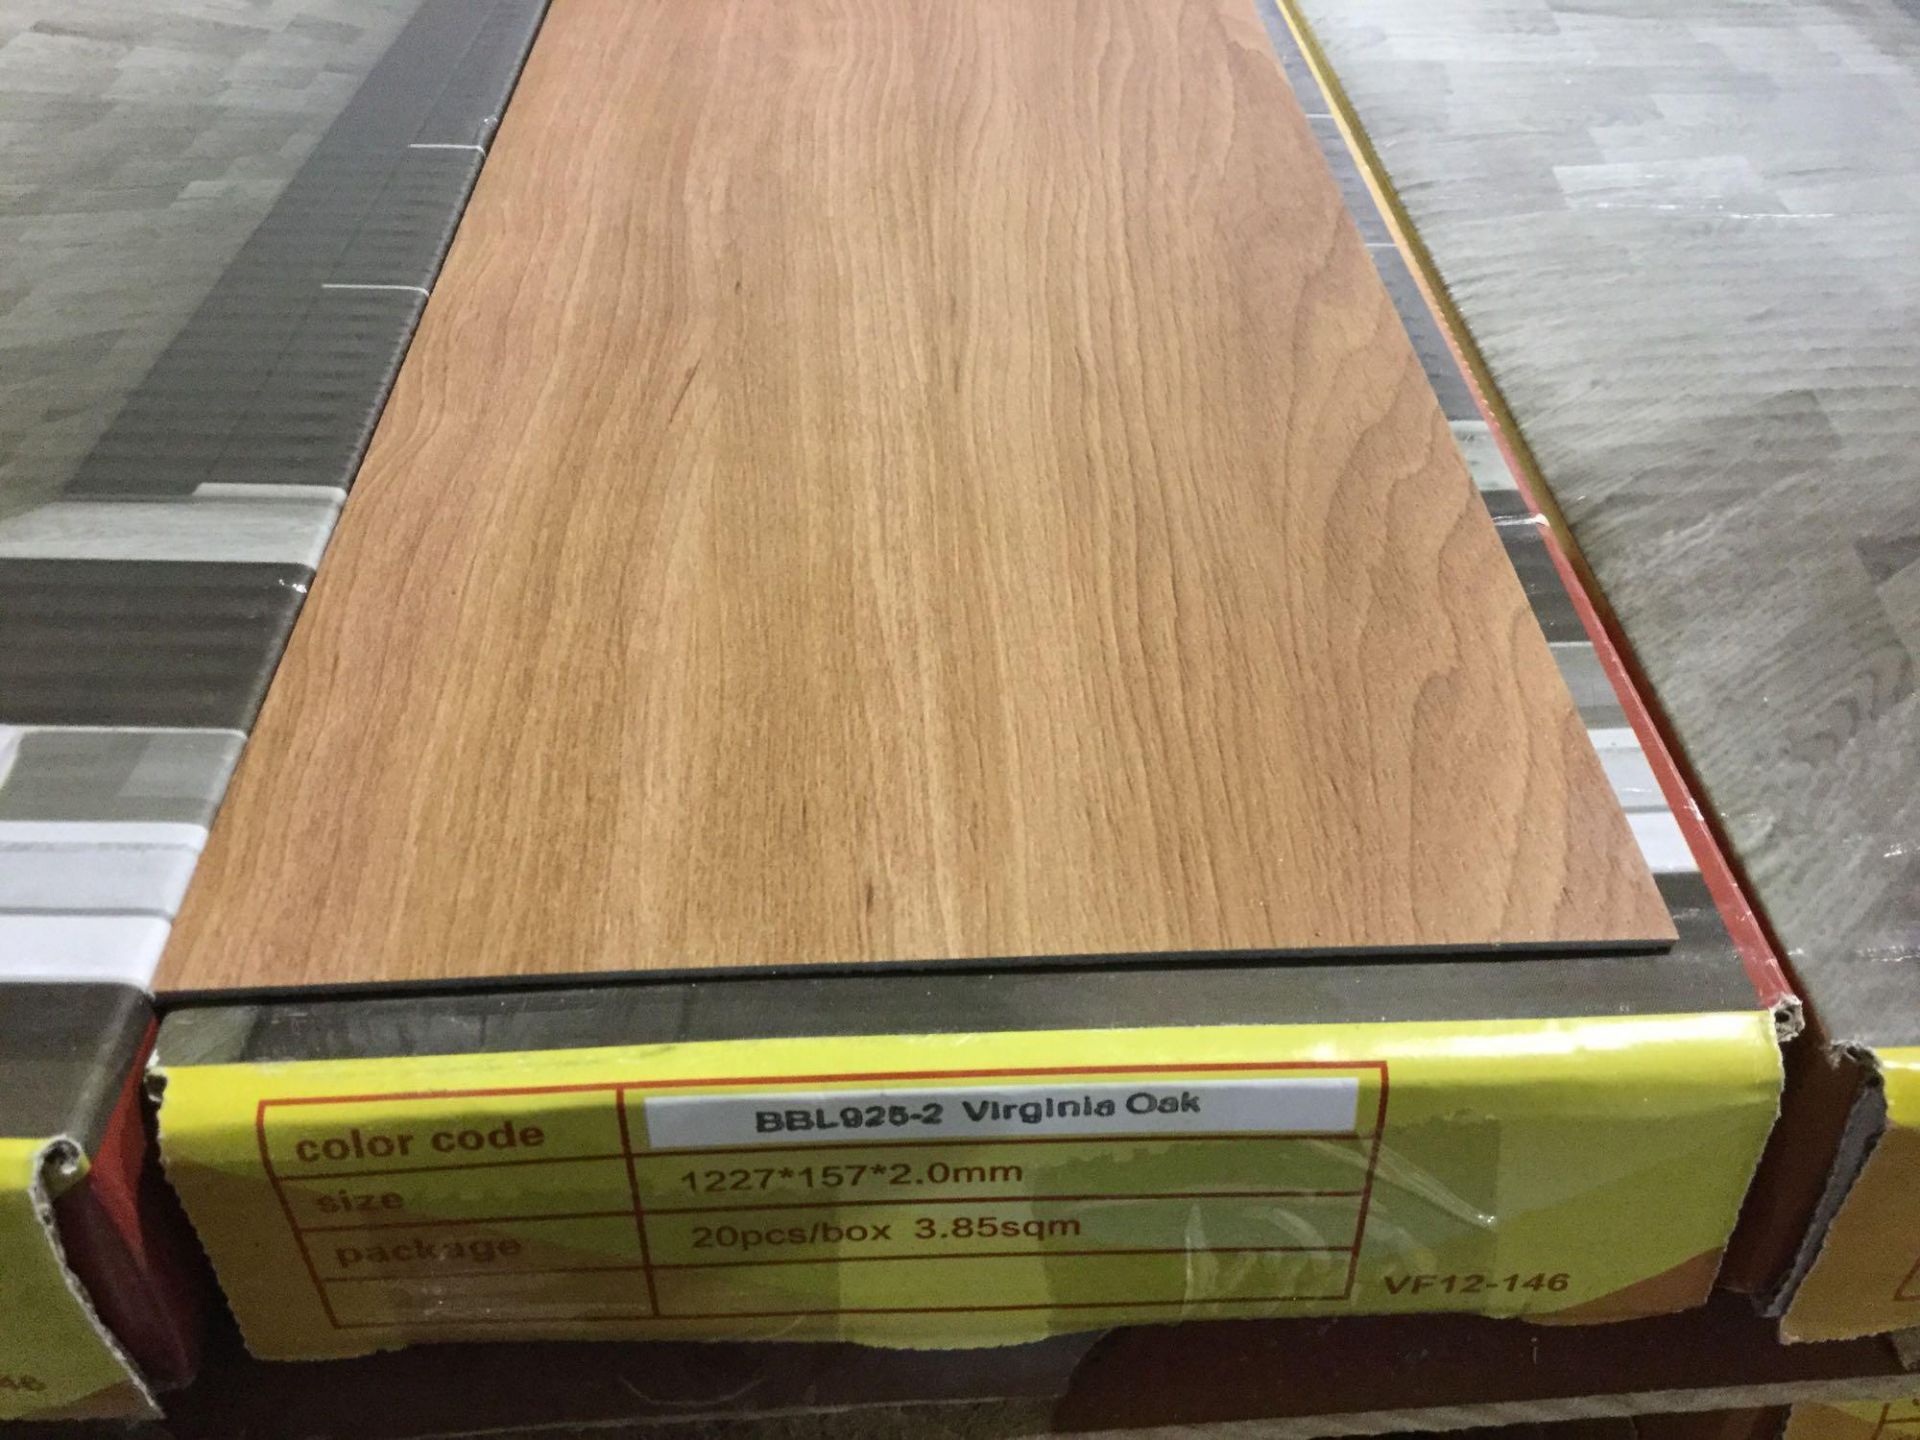 2mm Vinyl Plank Flooring - Virginia Oak 43 Sq ft/box - Image 2 of 2